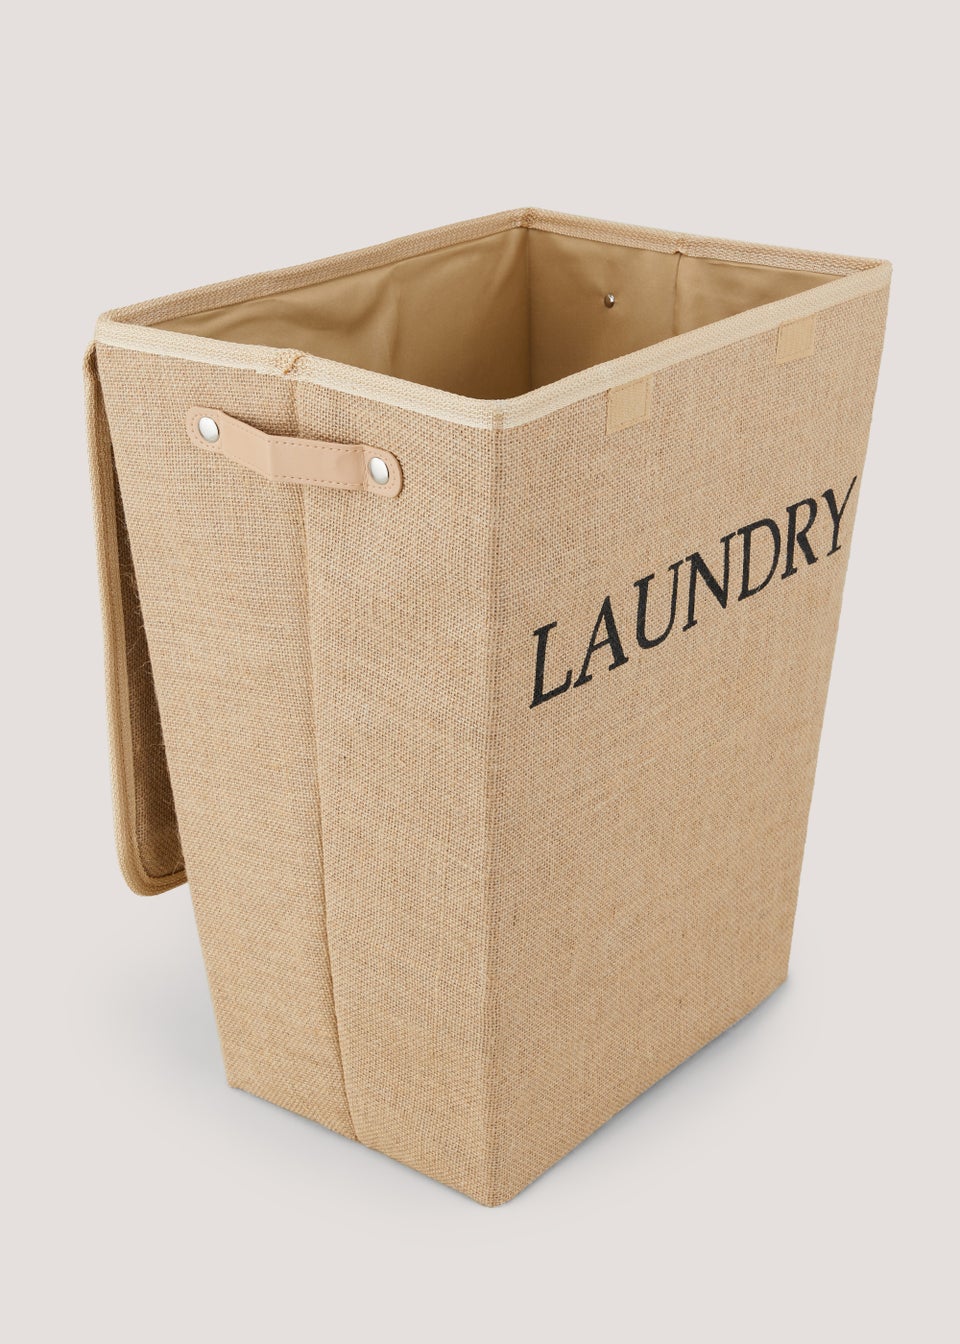 Jute Foldable Laundry Basket (50cm x 40cm x 29cm)